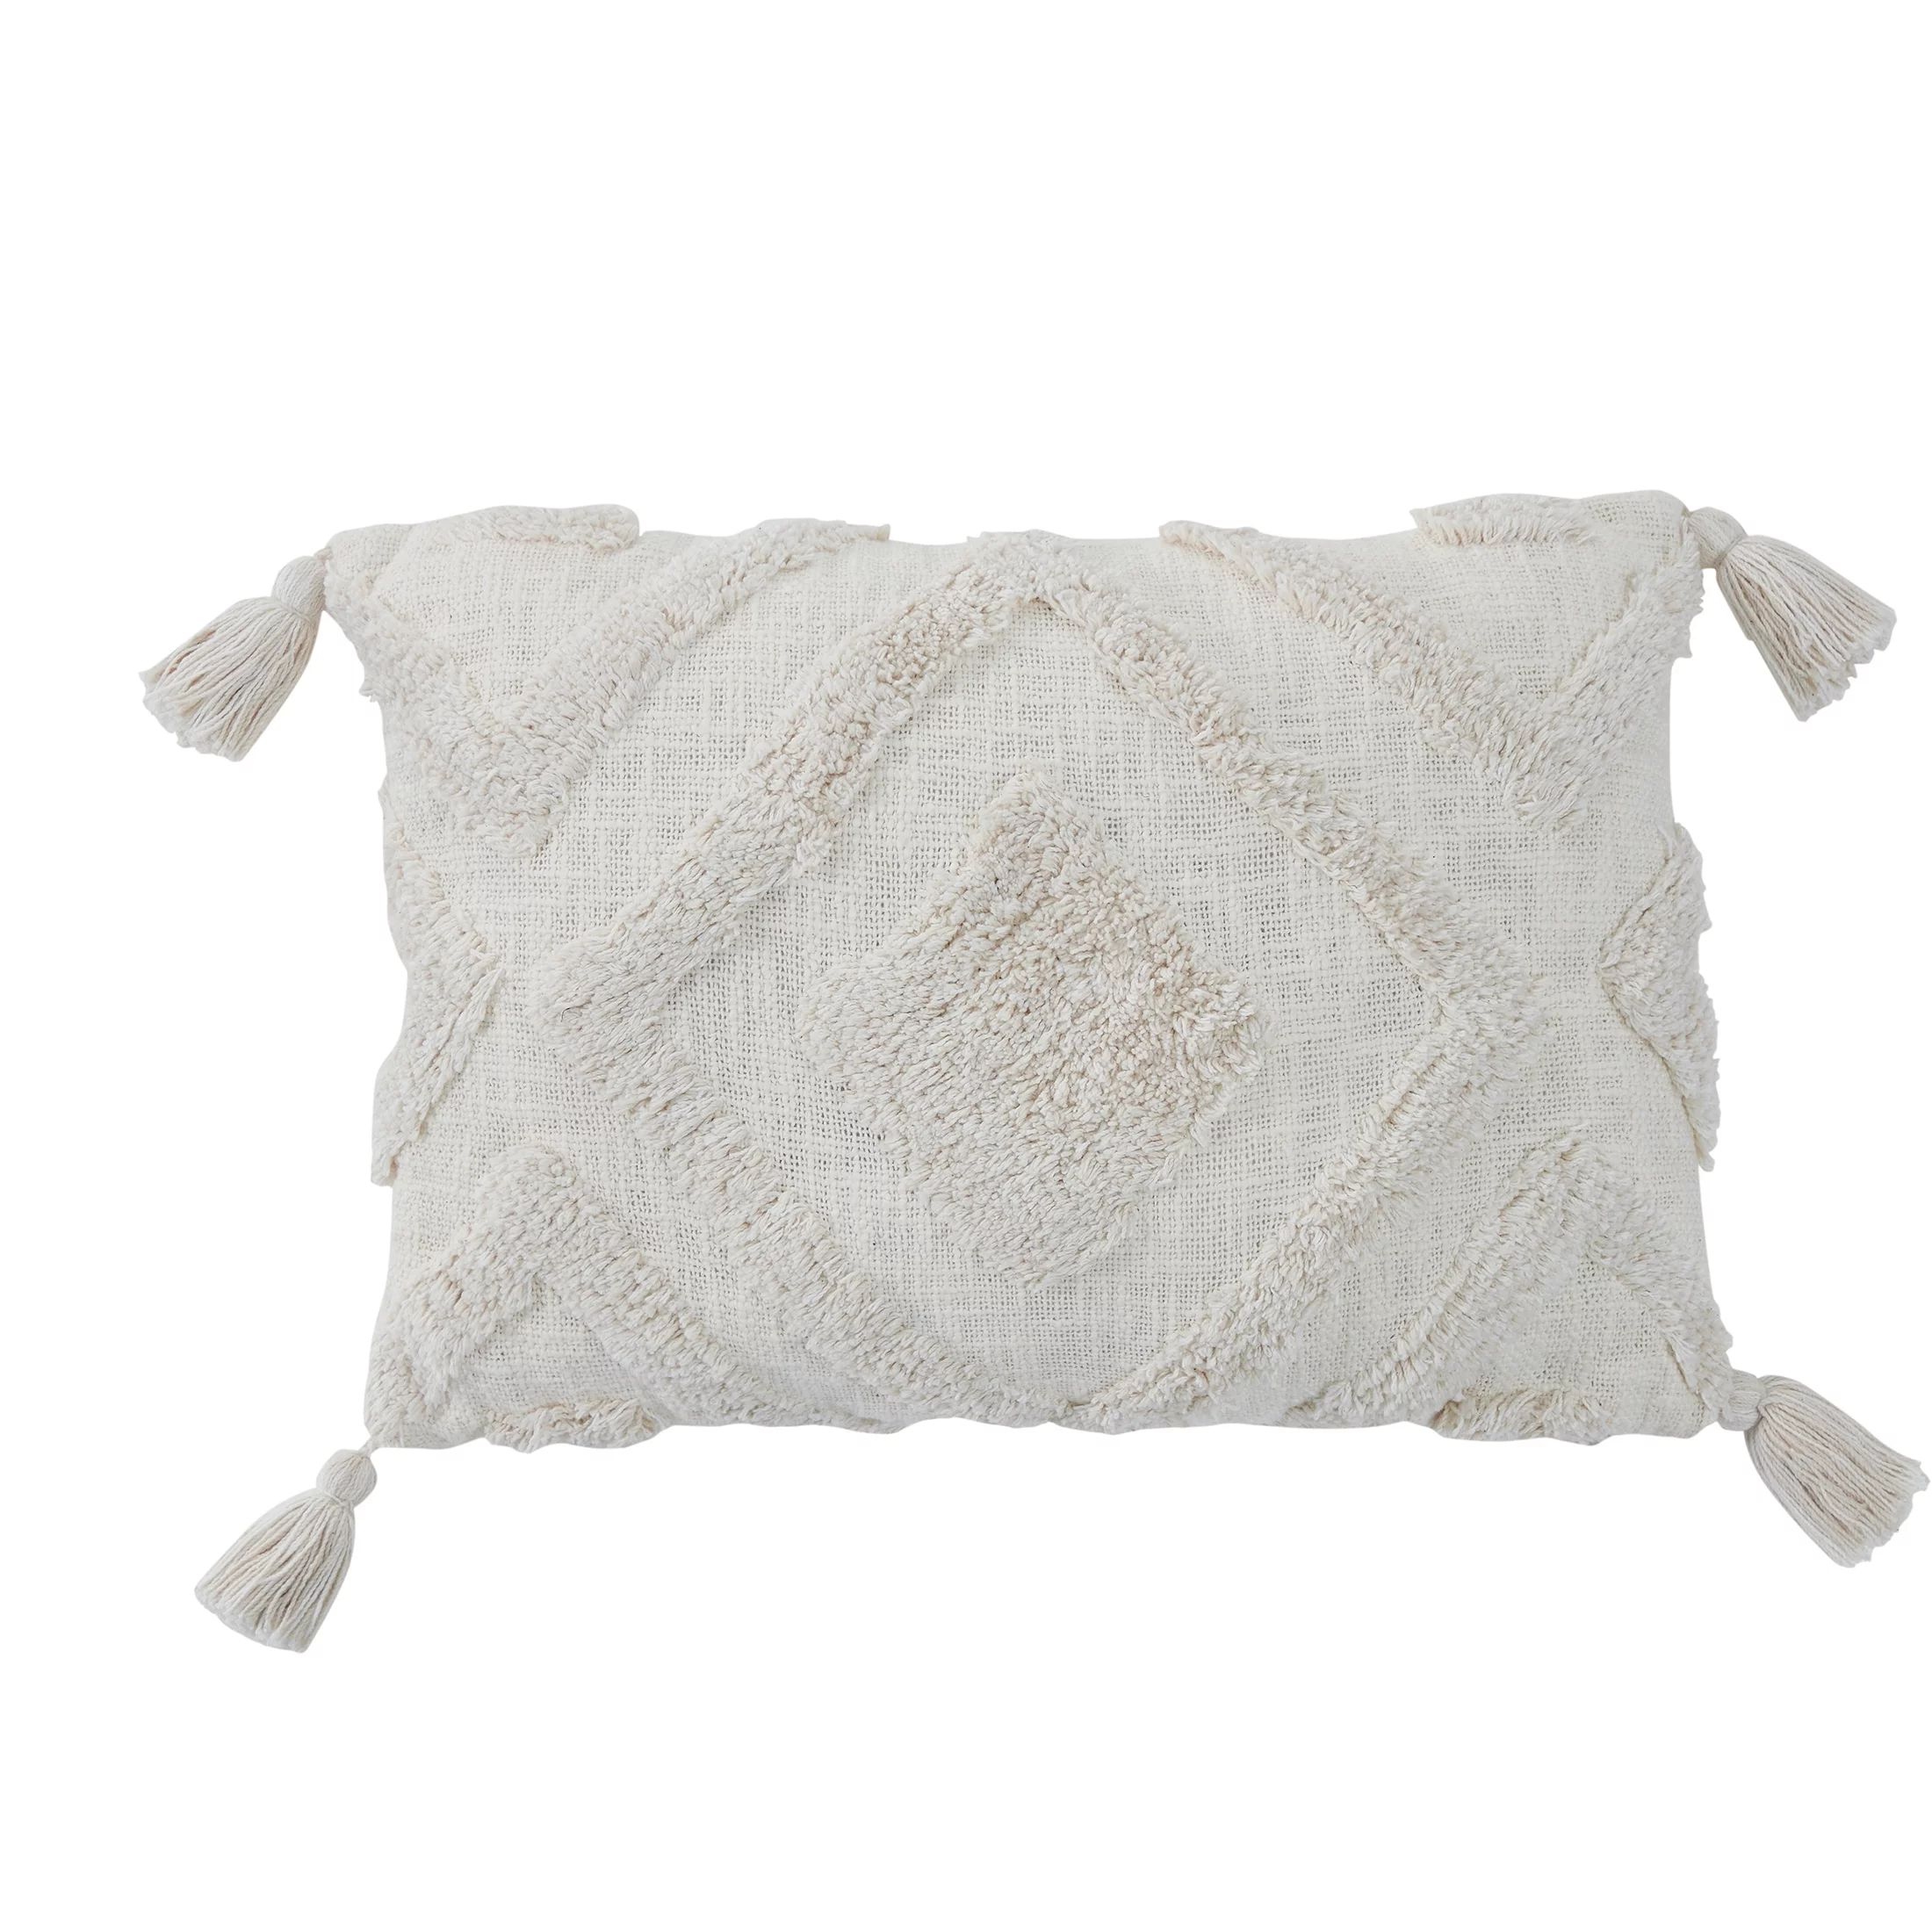 My Texas House Parker Tufted Cotton Oblong Decorative Pillow, 14" x 20", Coconut Milk - Walmart.c... | Walmart (US)